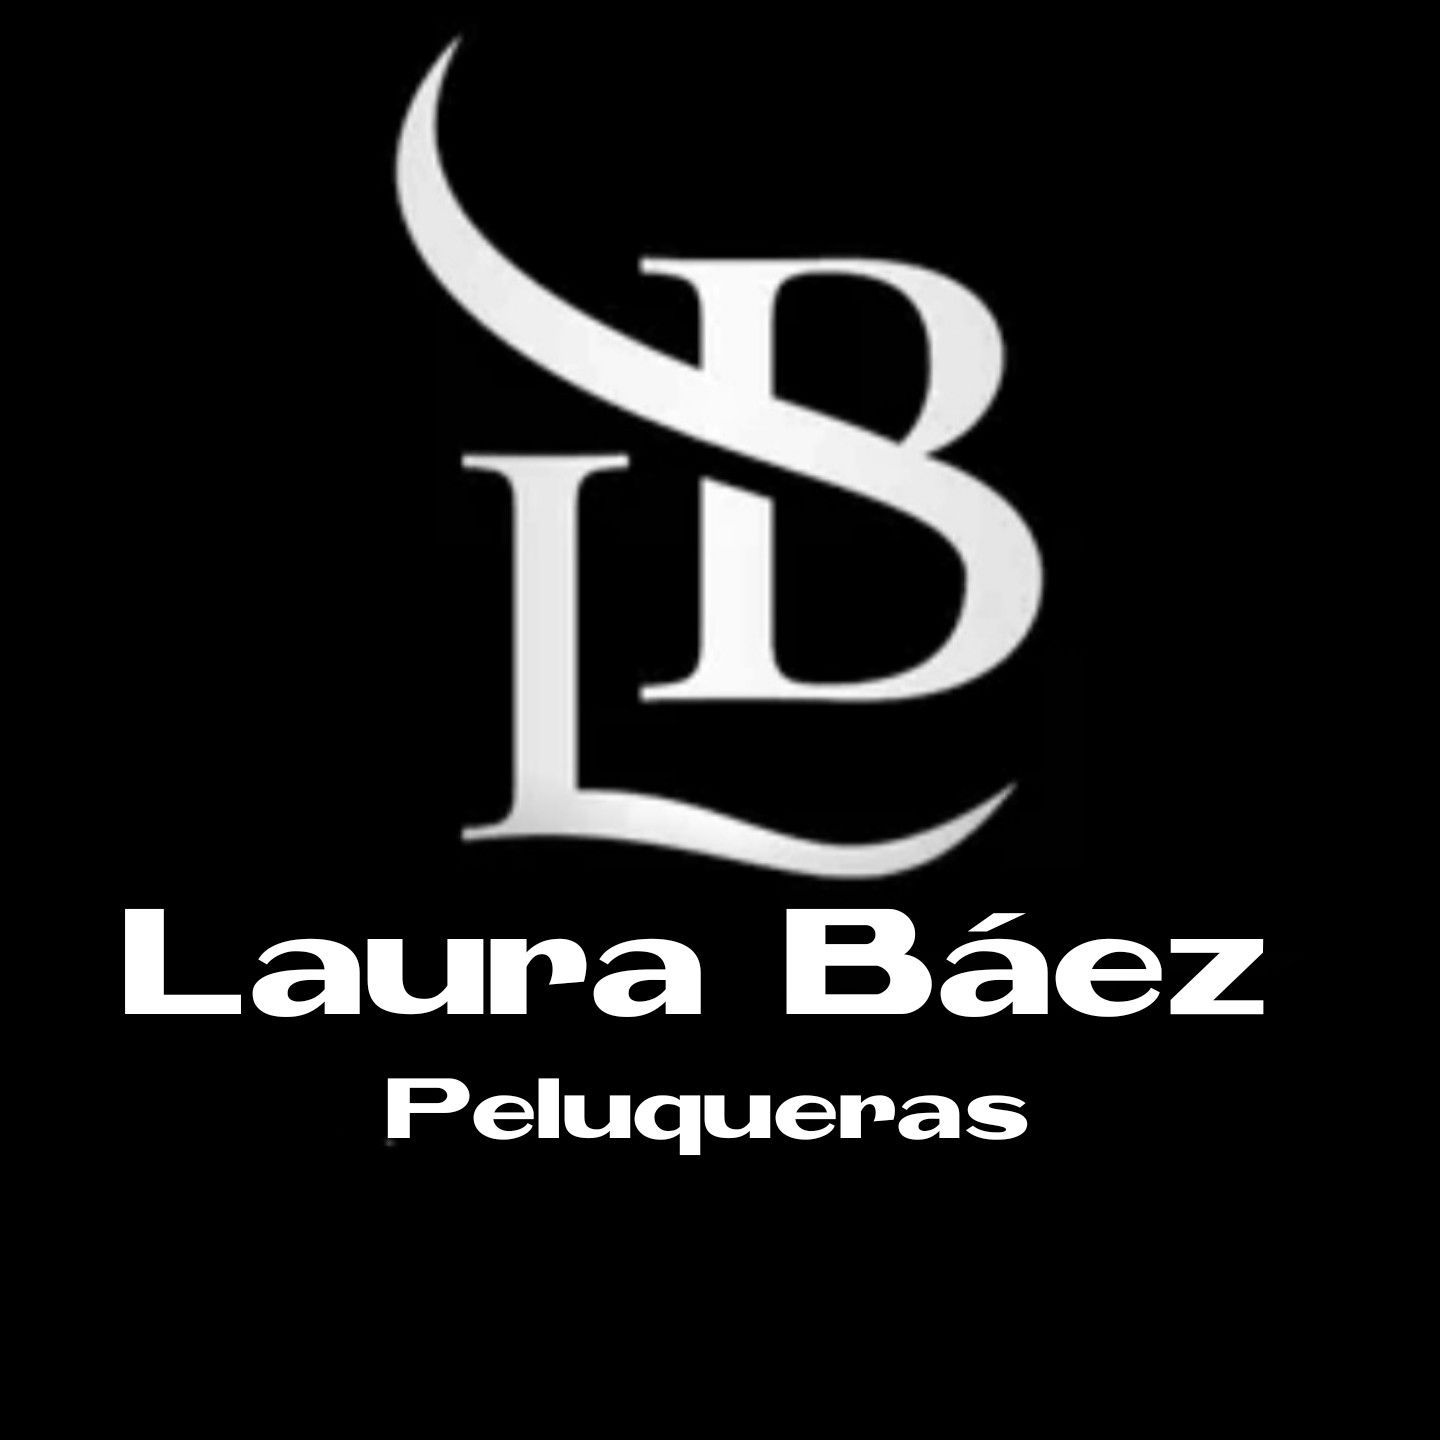 LB Laura Baez Peluqueras, Calle La Libertad, local 10B Los Cuartos, 38300, La Orotava